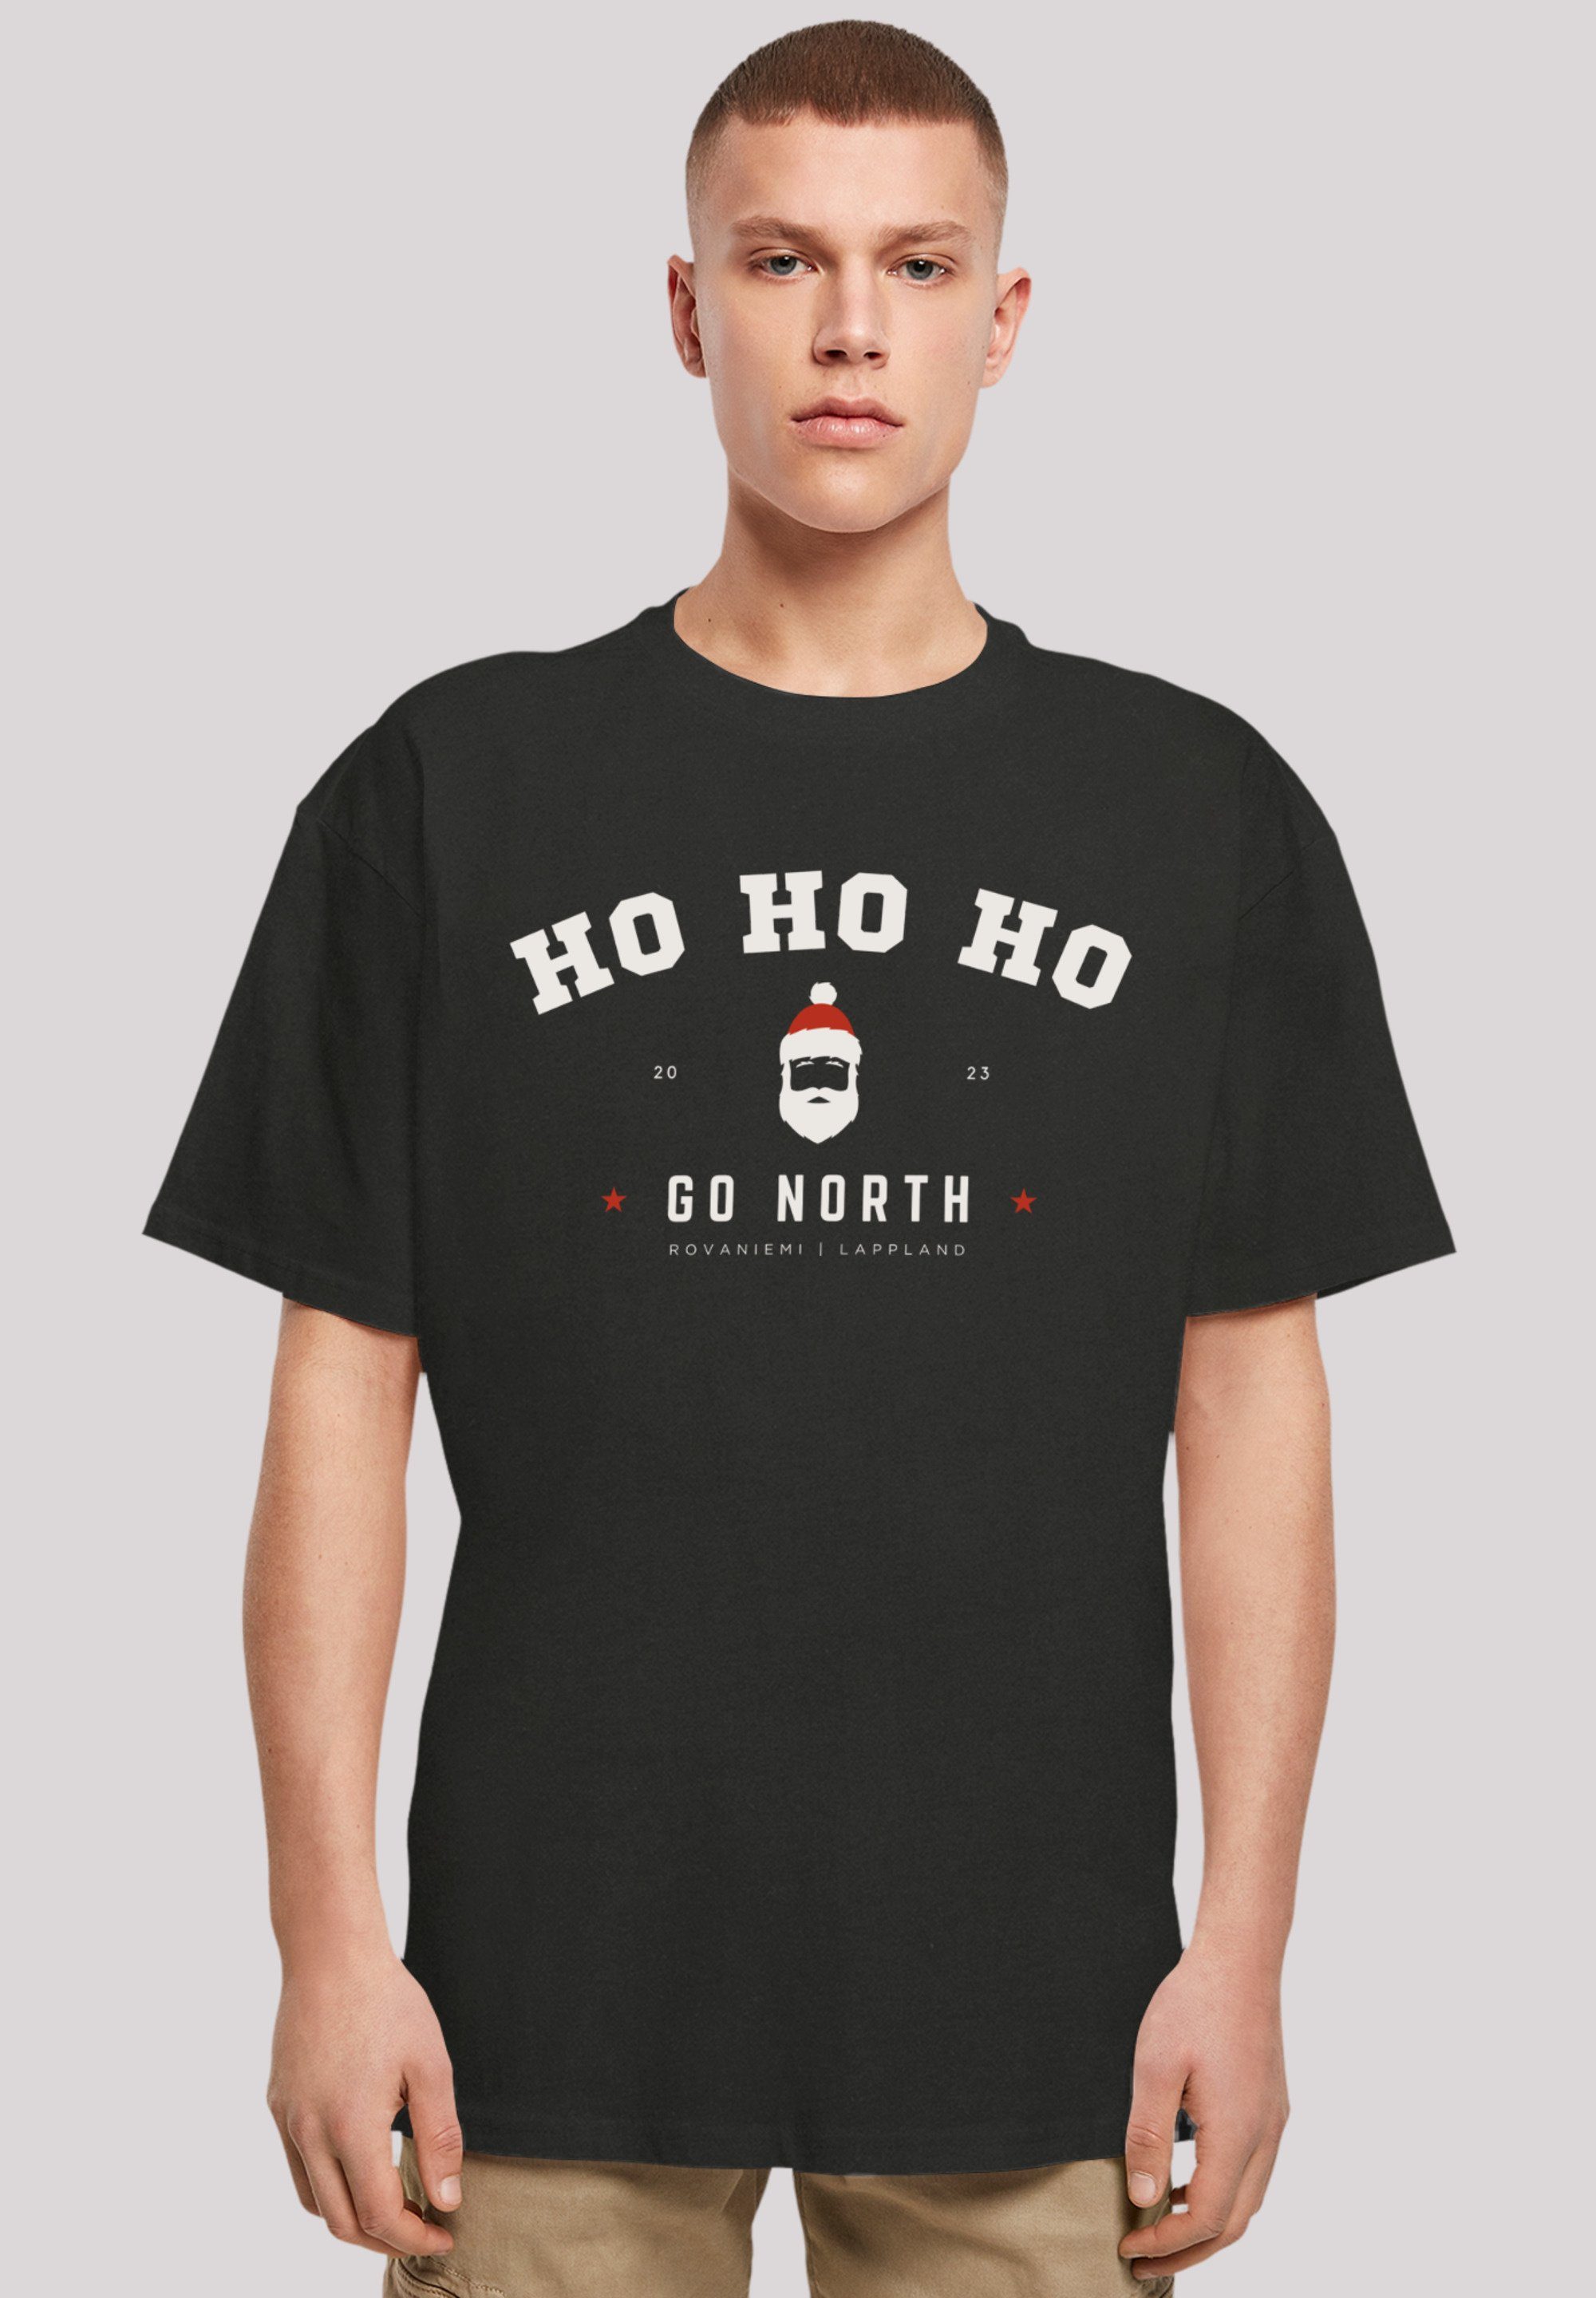 F4NT4STIC T-Shirt Geschenk, Claus Weihnachten, Logo Santa schwarz Ho Ho Weihnachten Ho